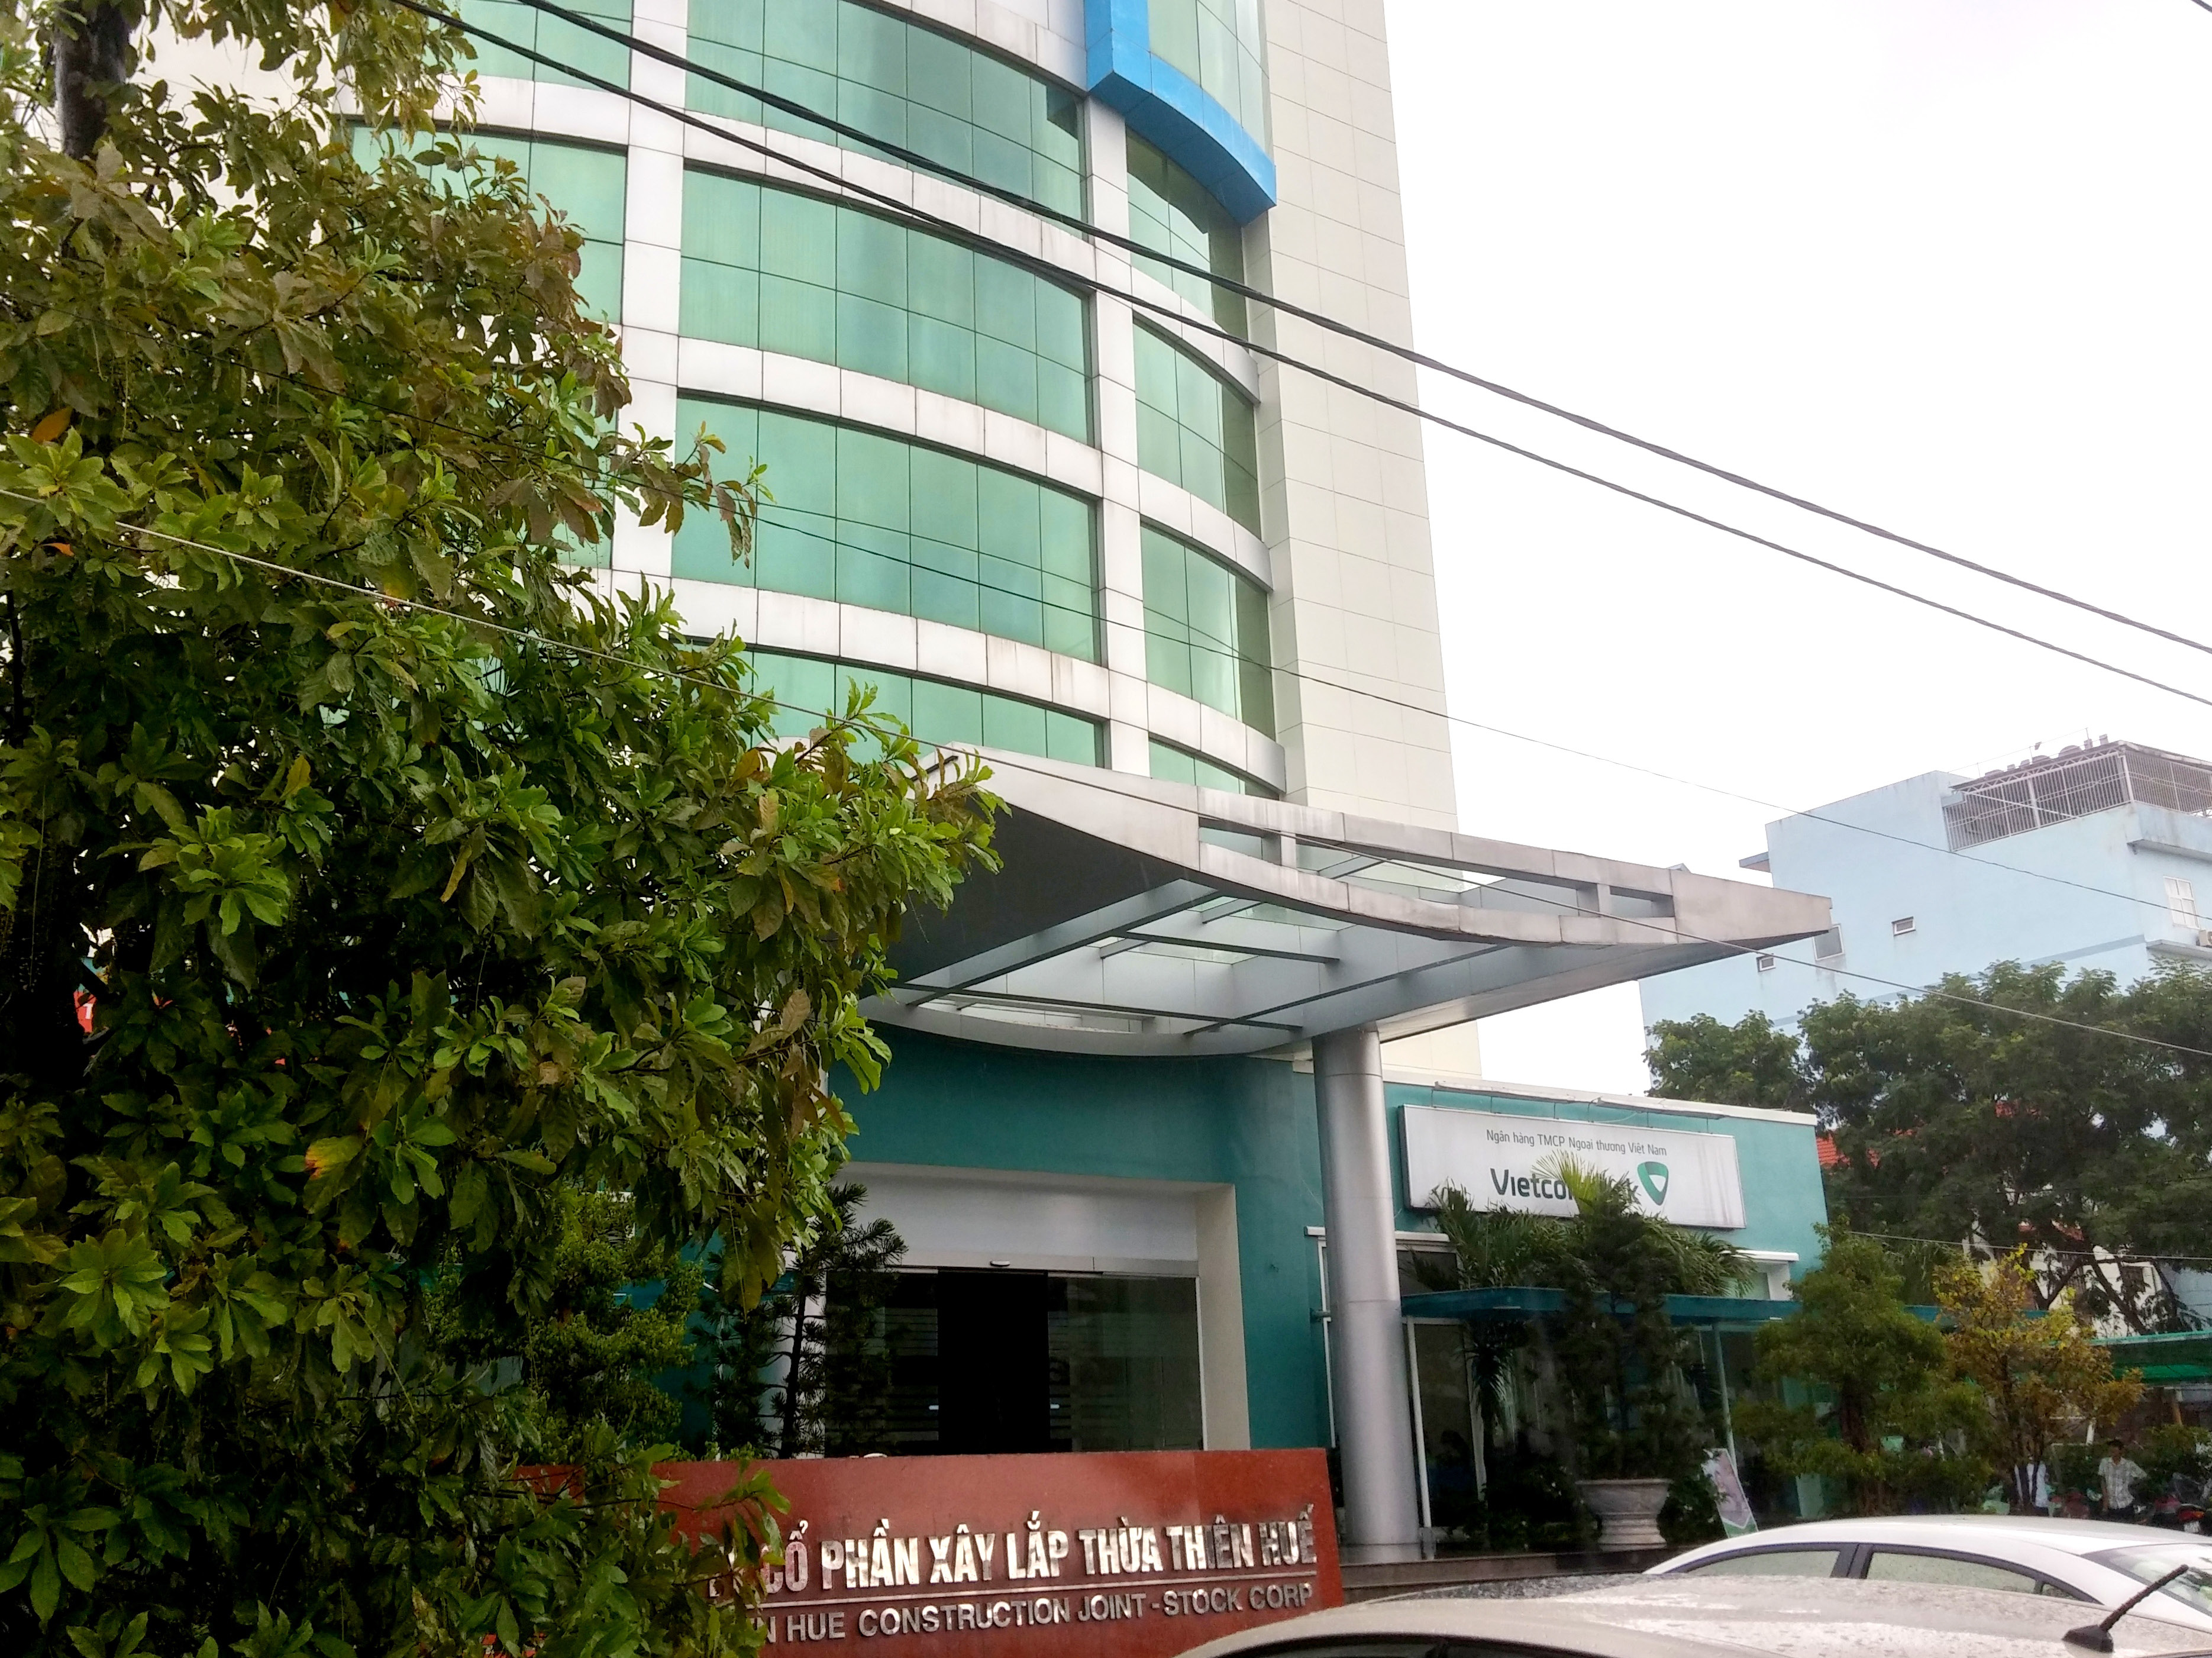 Xây lắp Thừa Thiên Huế (HUB) sắp niêm yết 15,2 triệu cổ phiếu trên HOSE